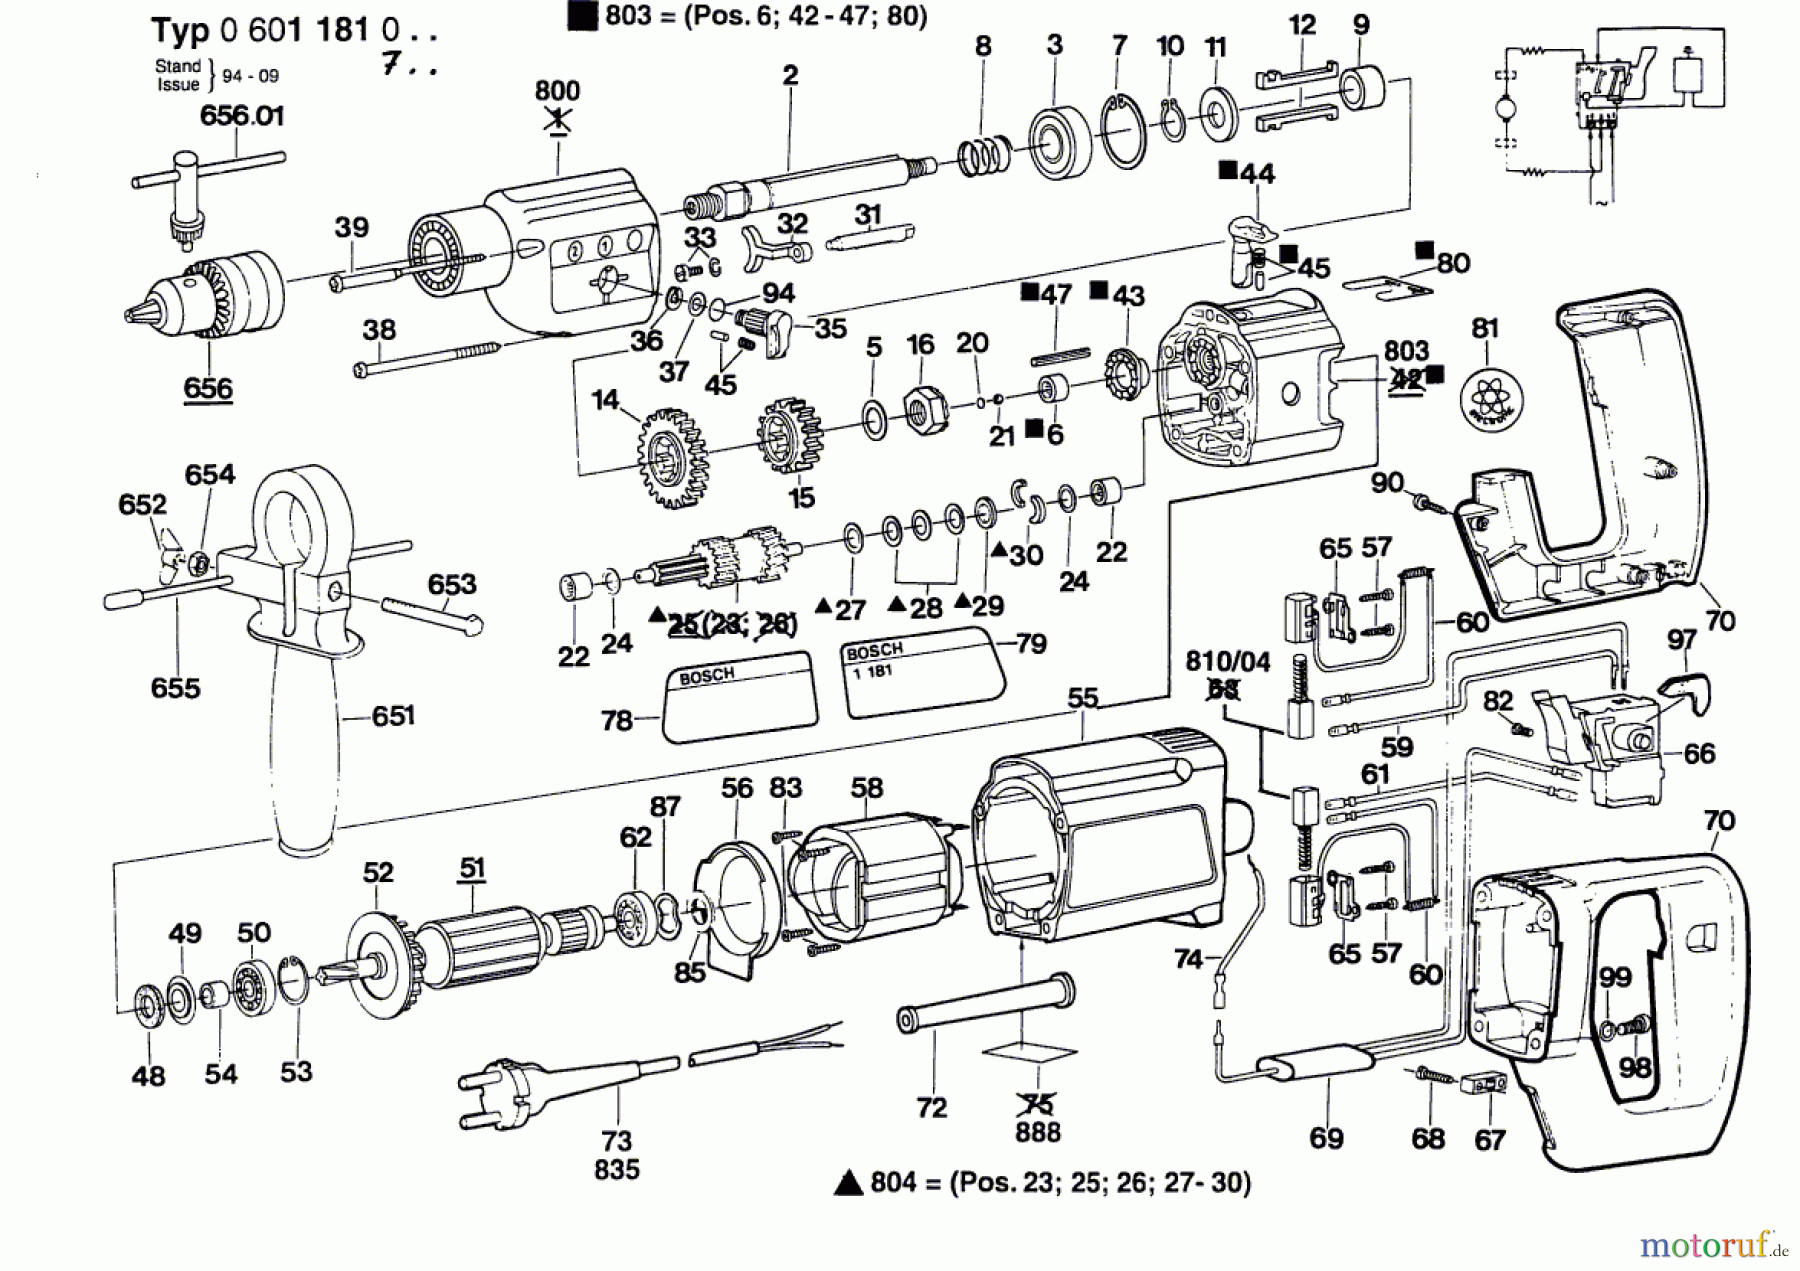  Bosch Werkzeug Schlagbohrmaschine ELECTRONIC Seite 1